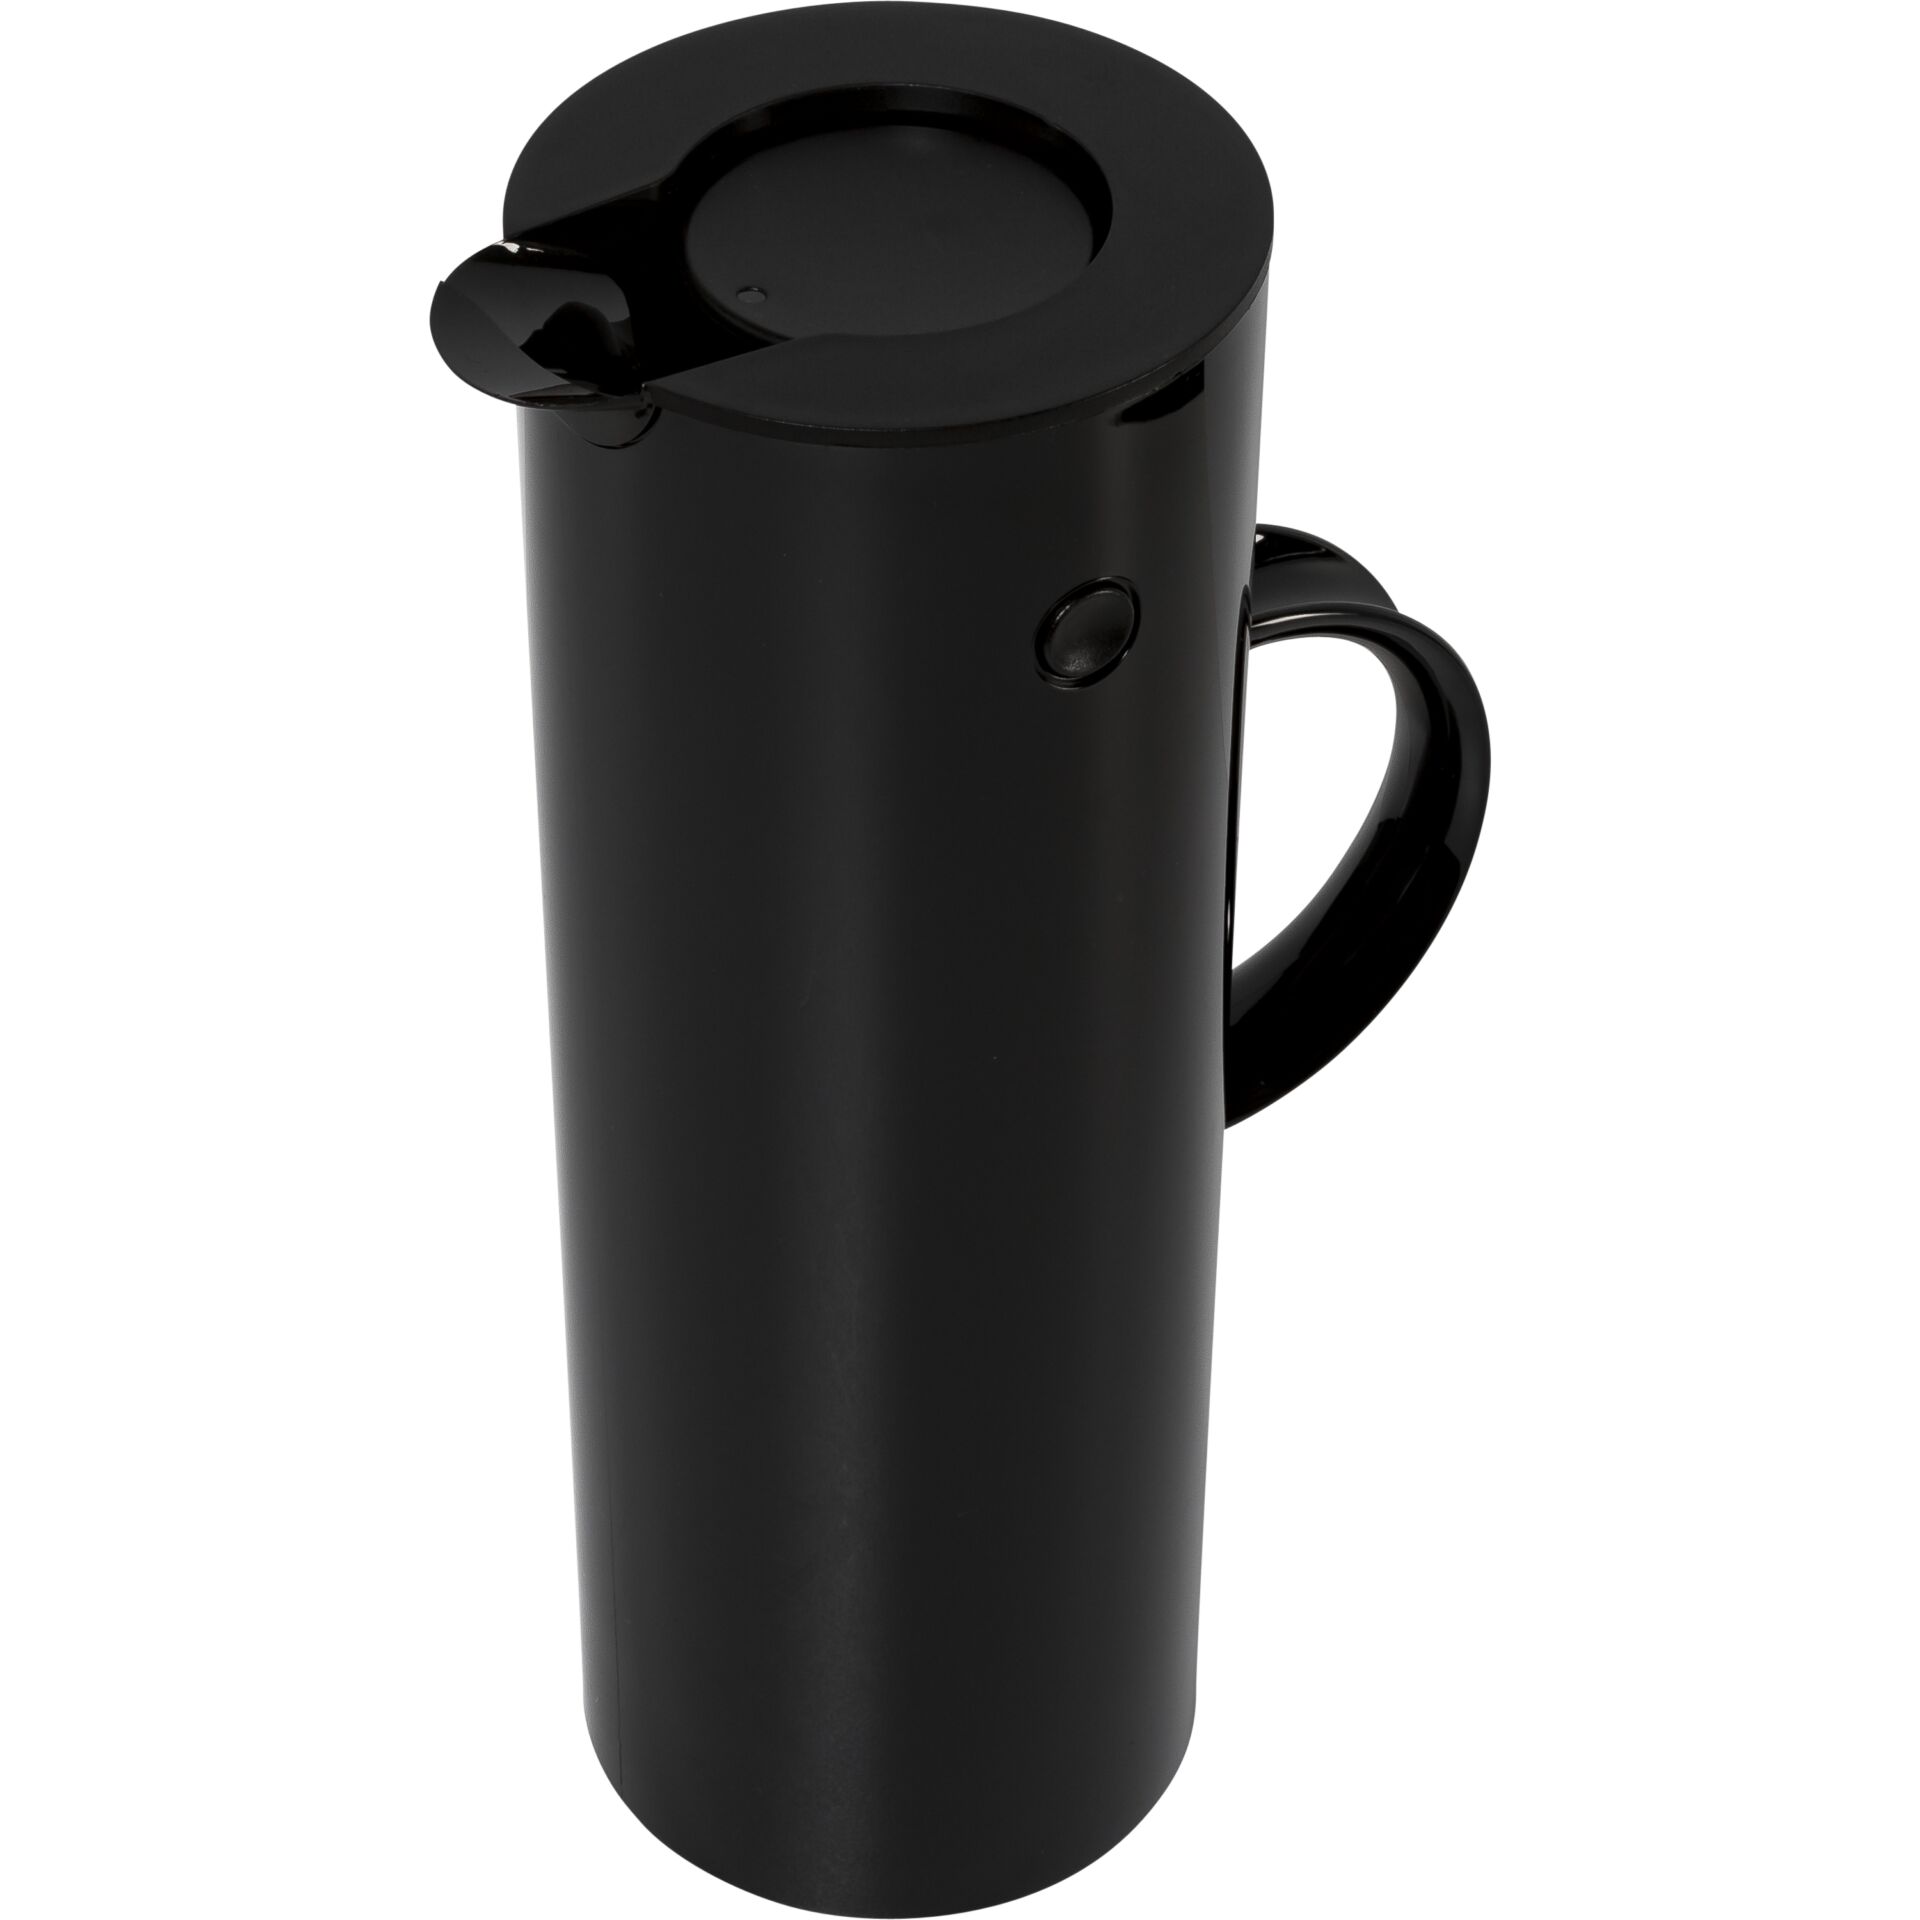 Stelton EM 77 thermal jug 1l black